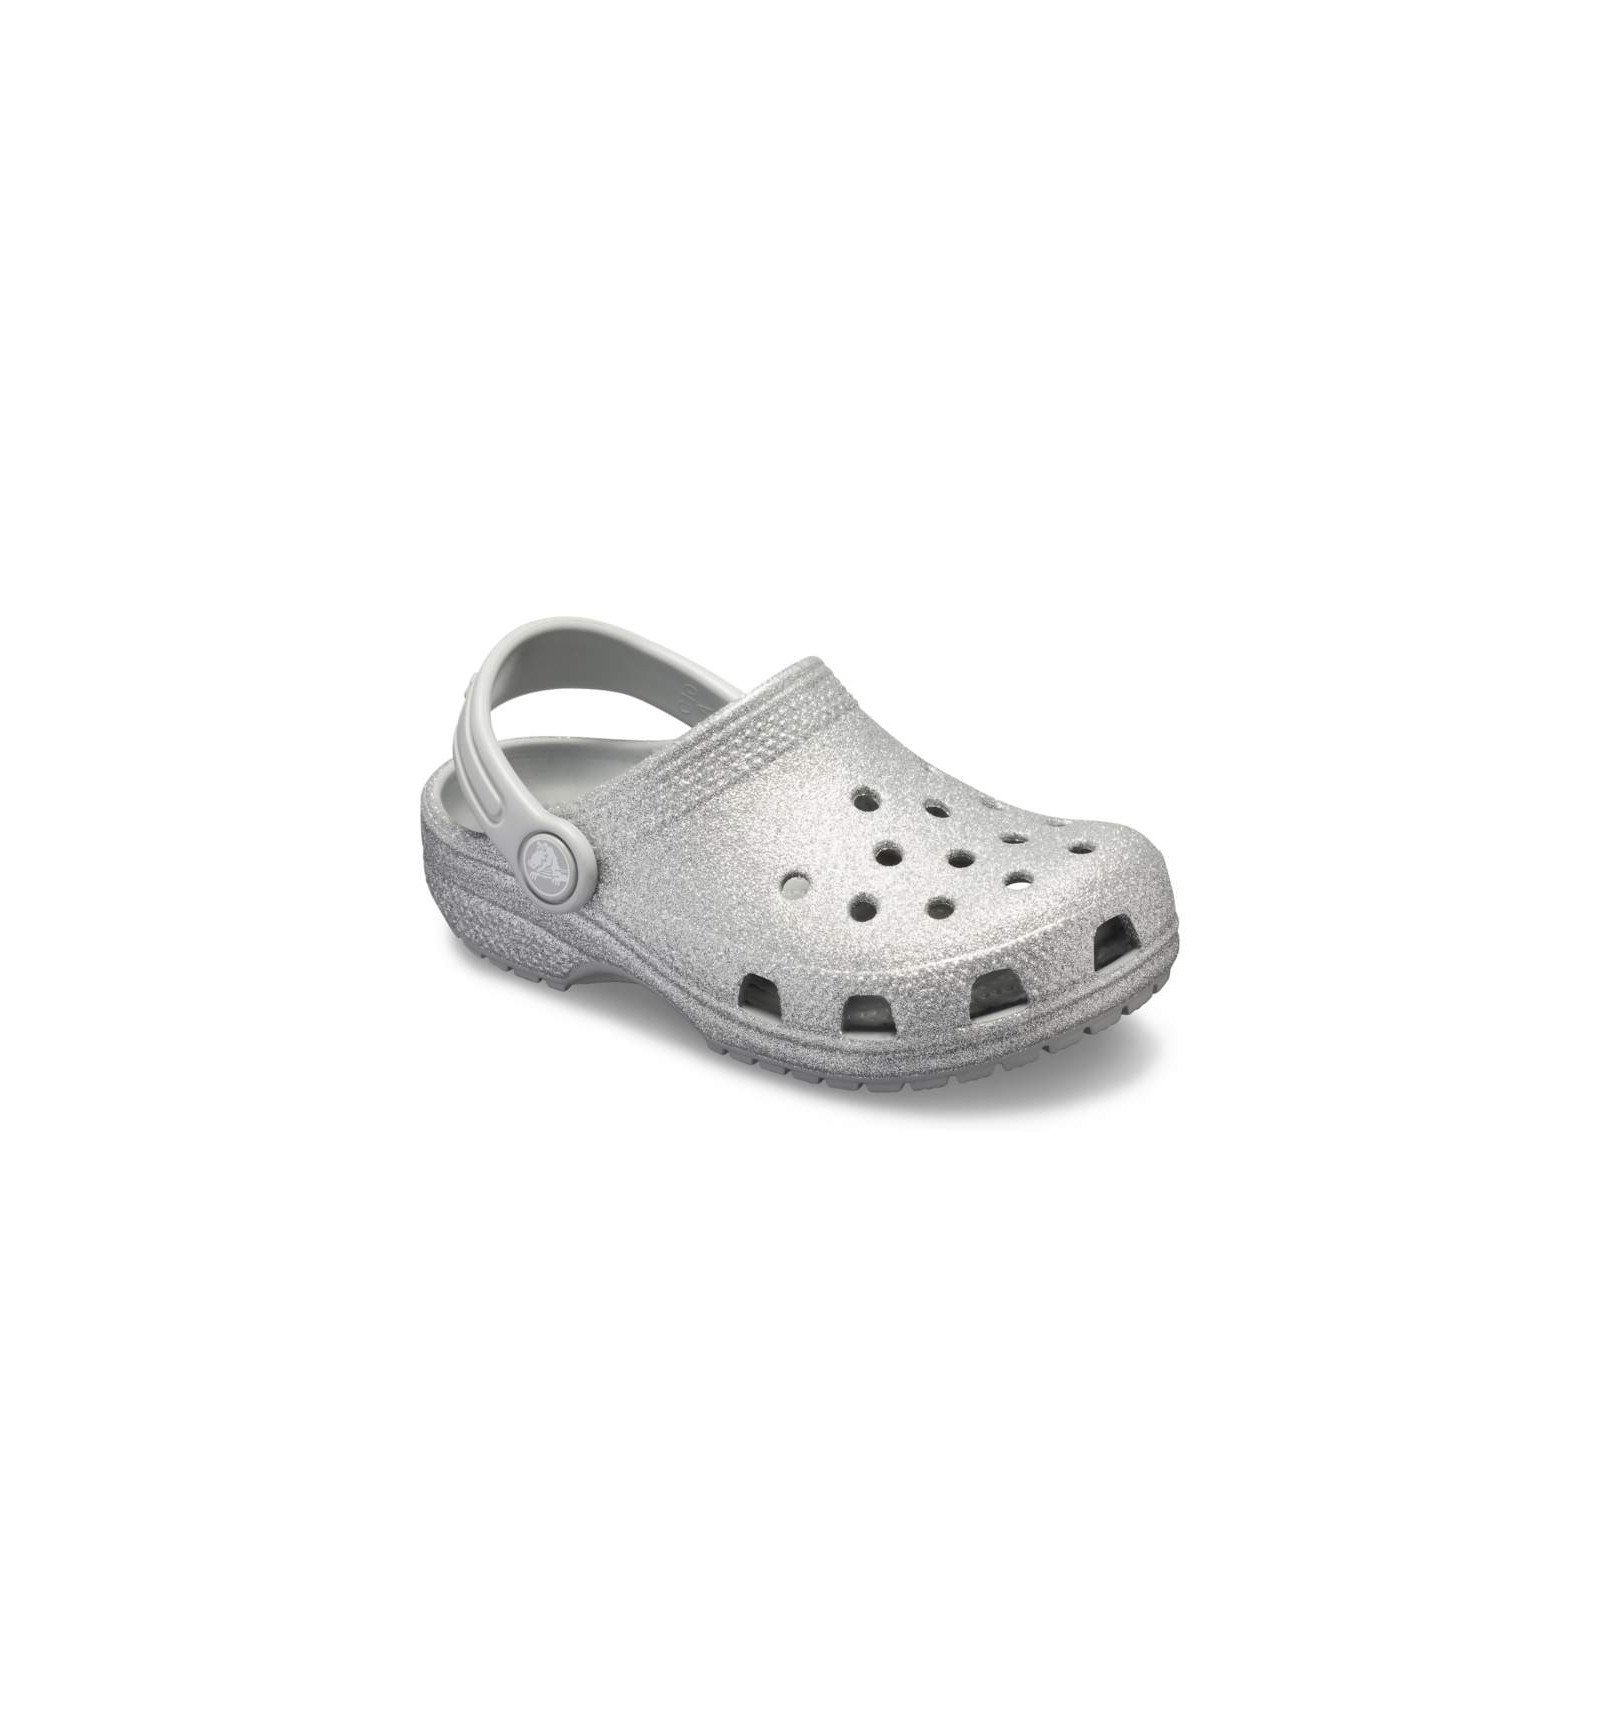 silver crocs sandals